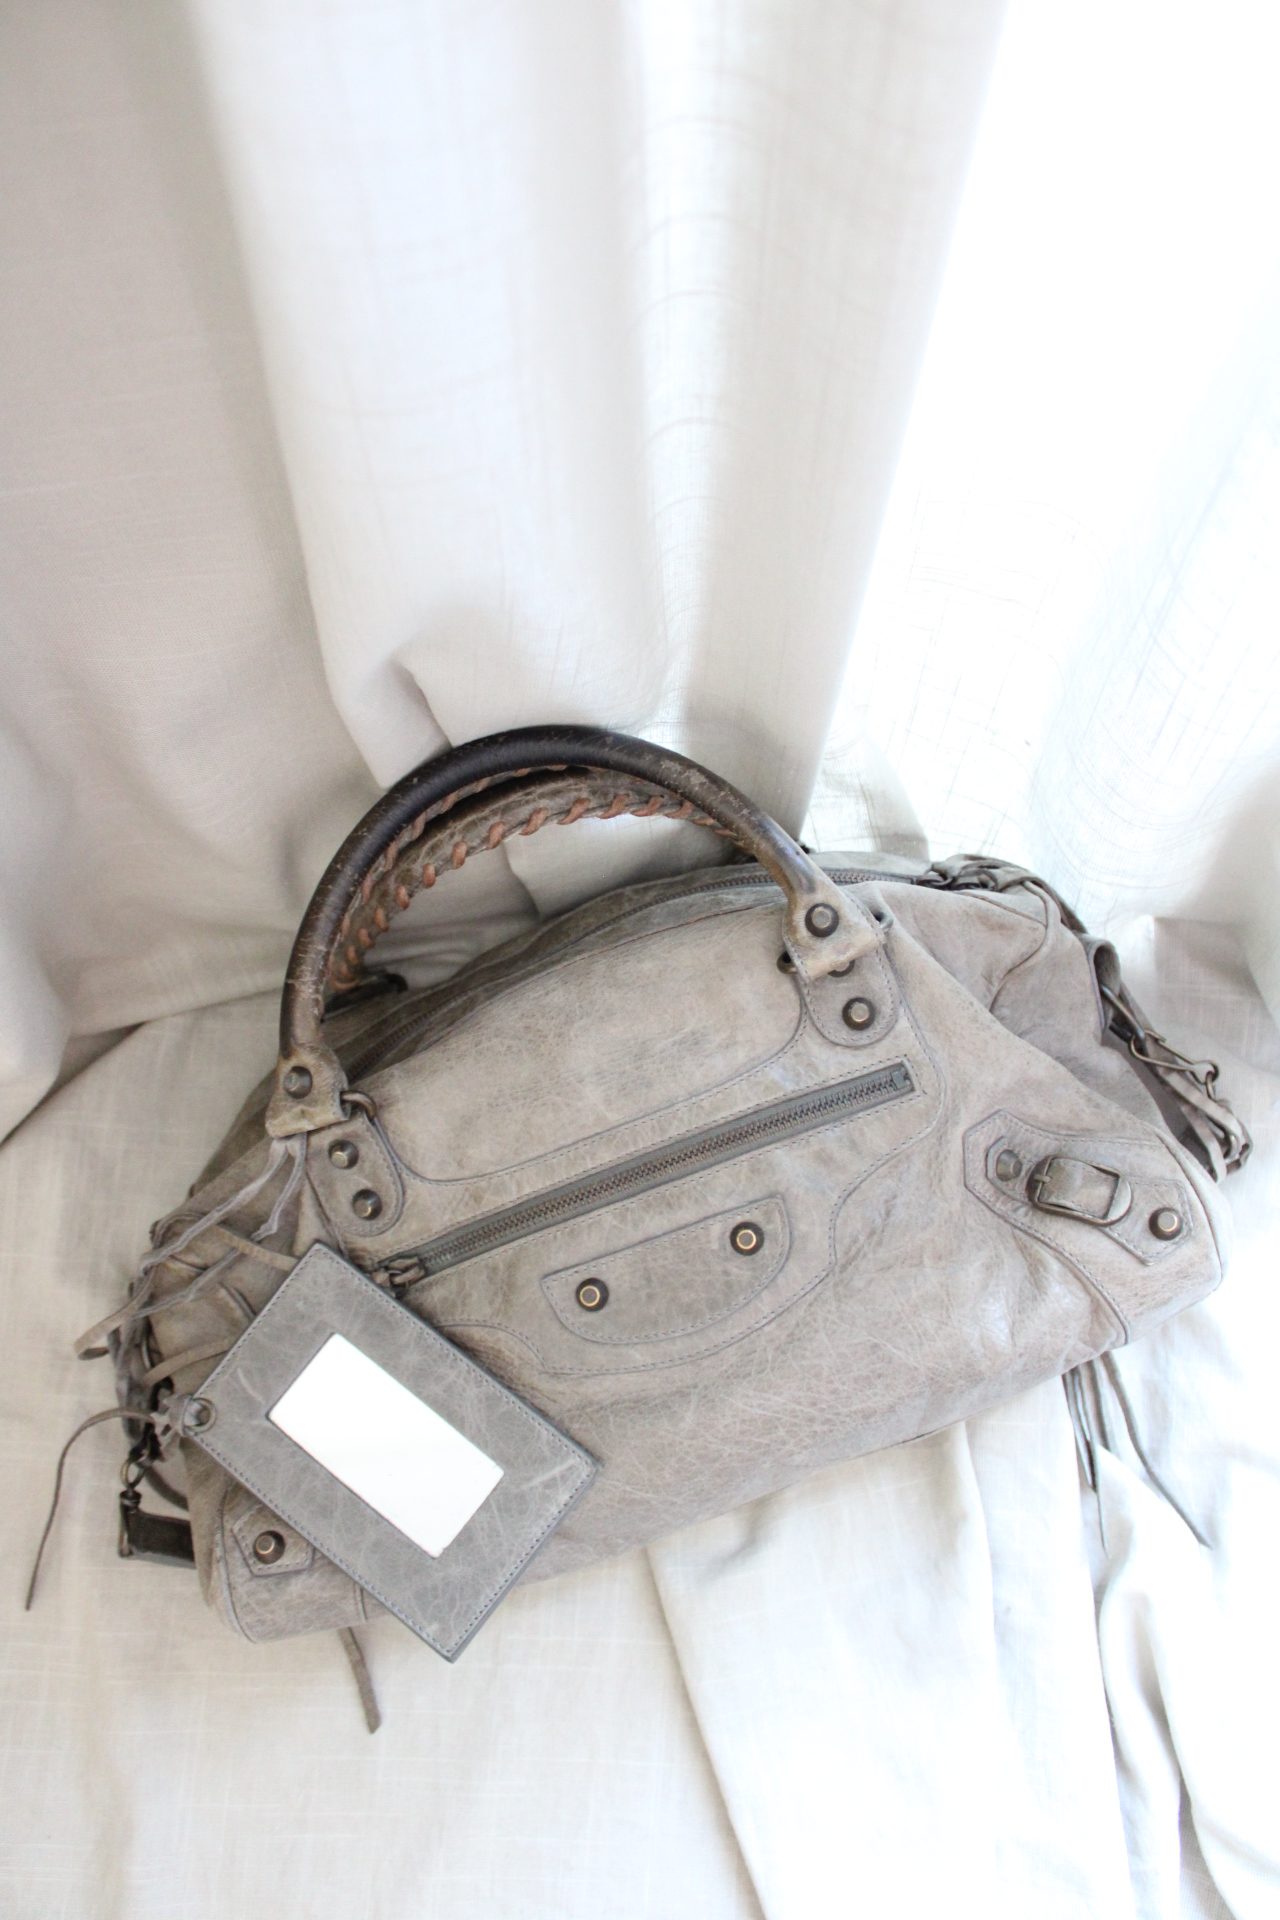 Balenciaga Light Grey City Bag with Crossbody Strap – The Hangout